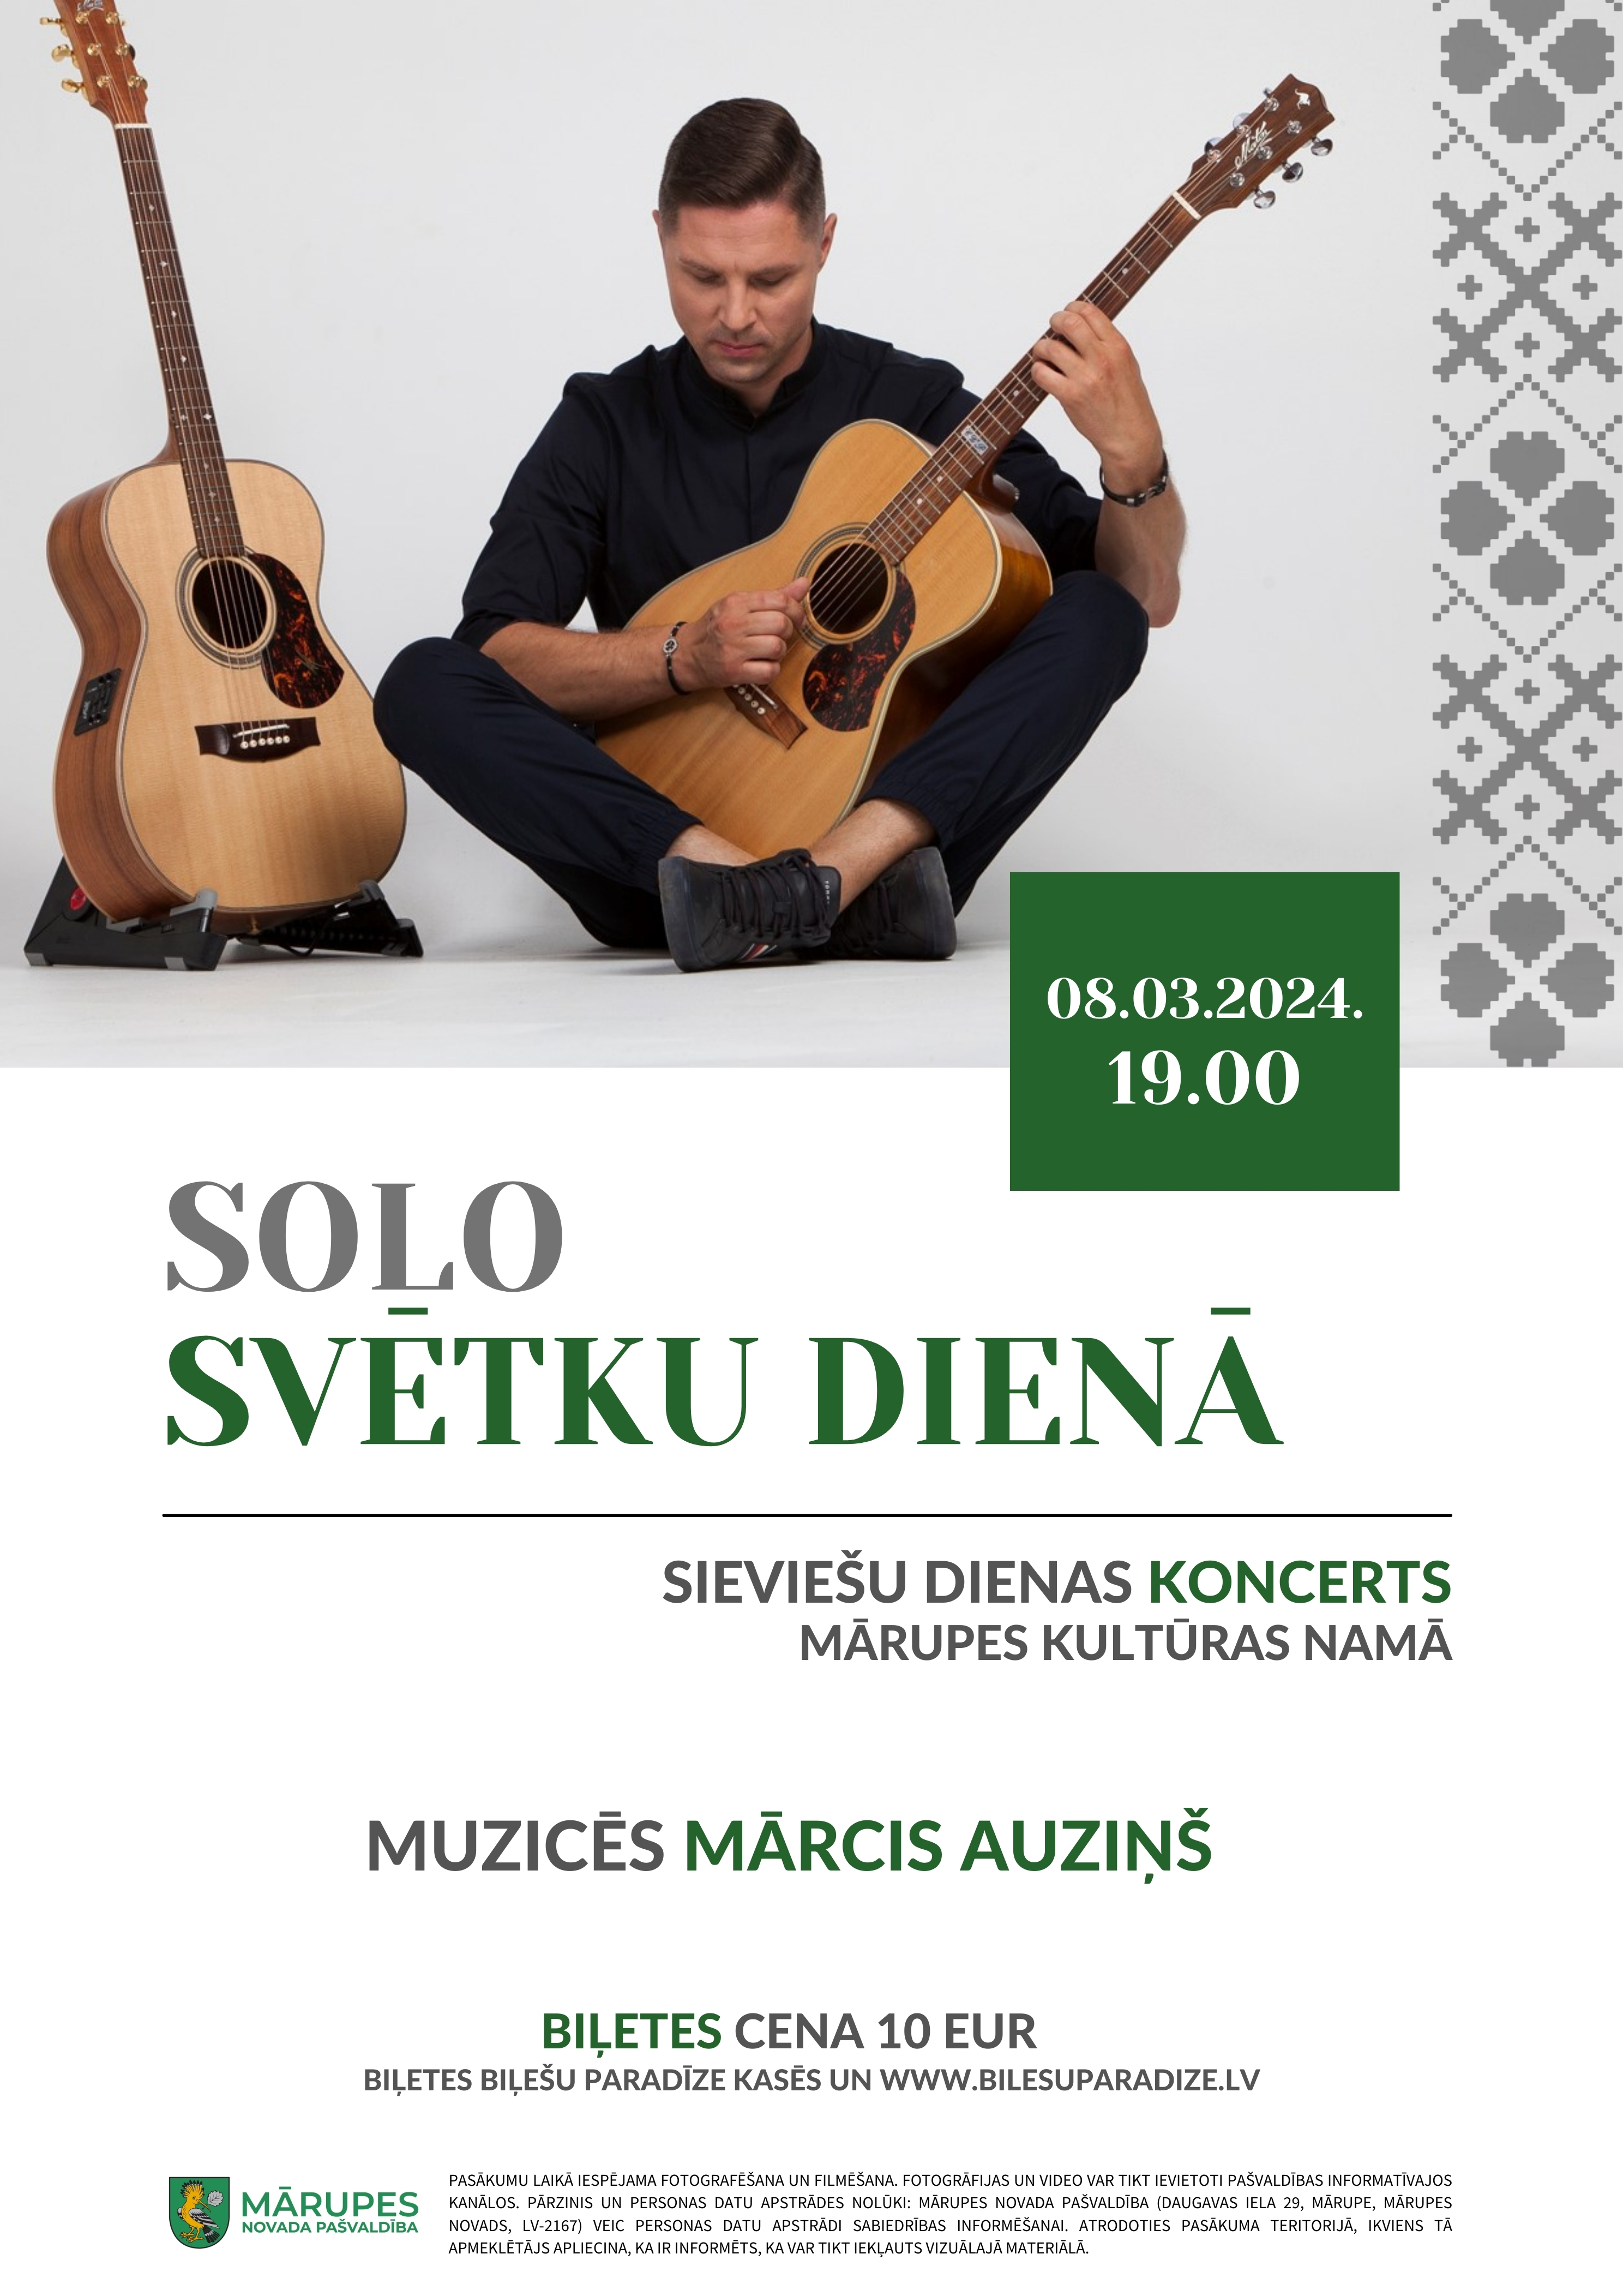 Ģitārists Mārcis Auziņš ar koncertu SOLO SVĒTKU DIENĀ 8. martā uzstāsies Mārupes Kultūras namā